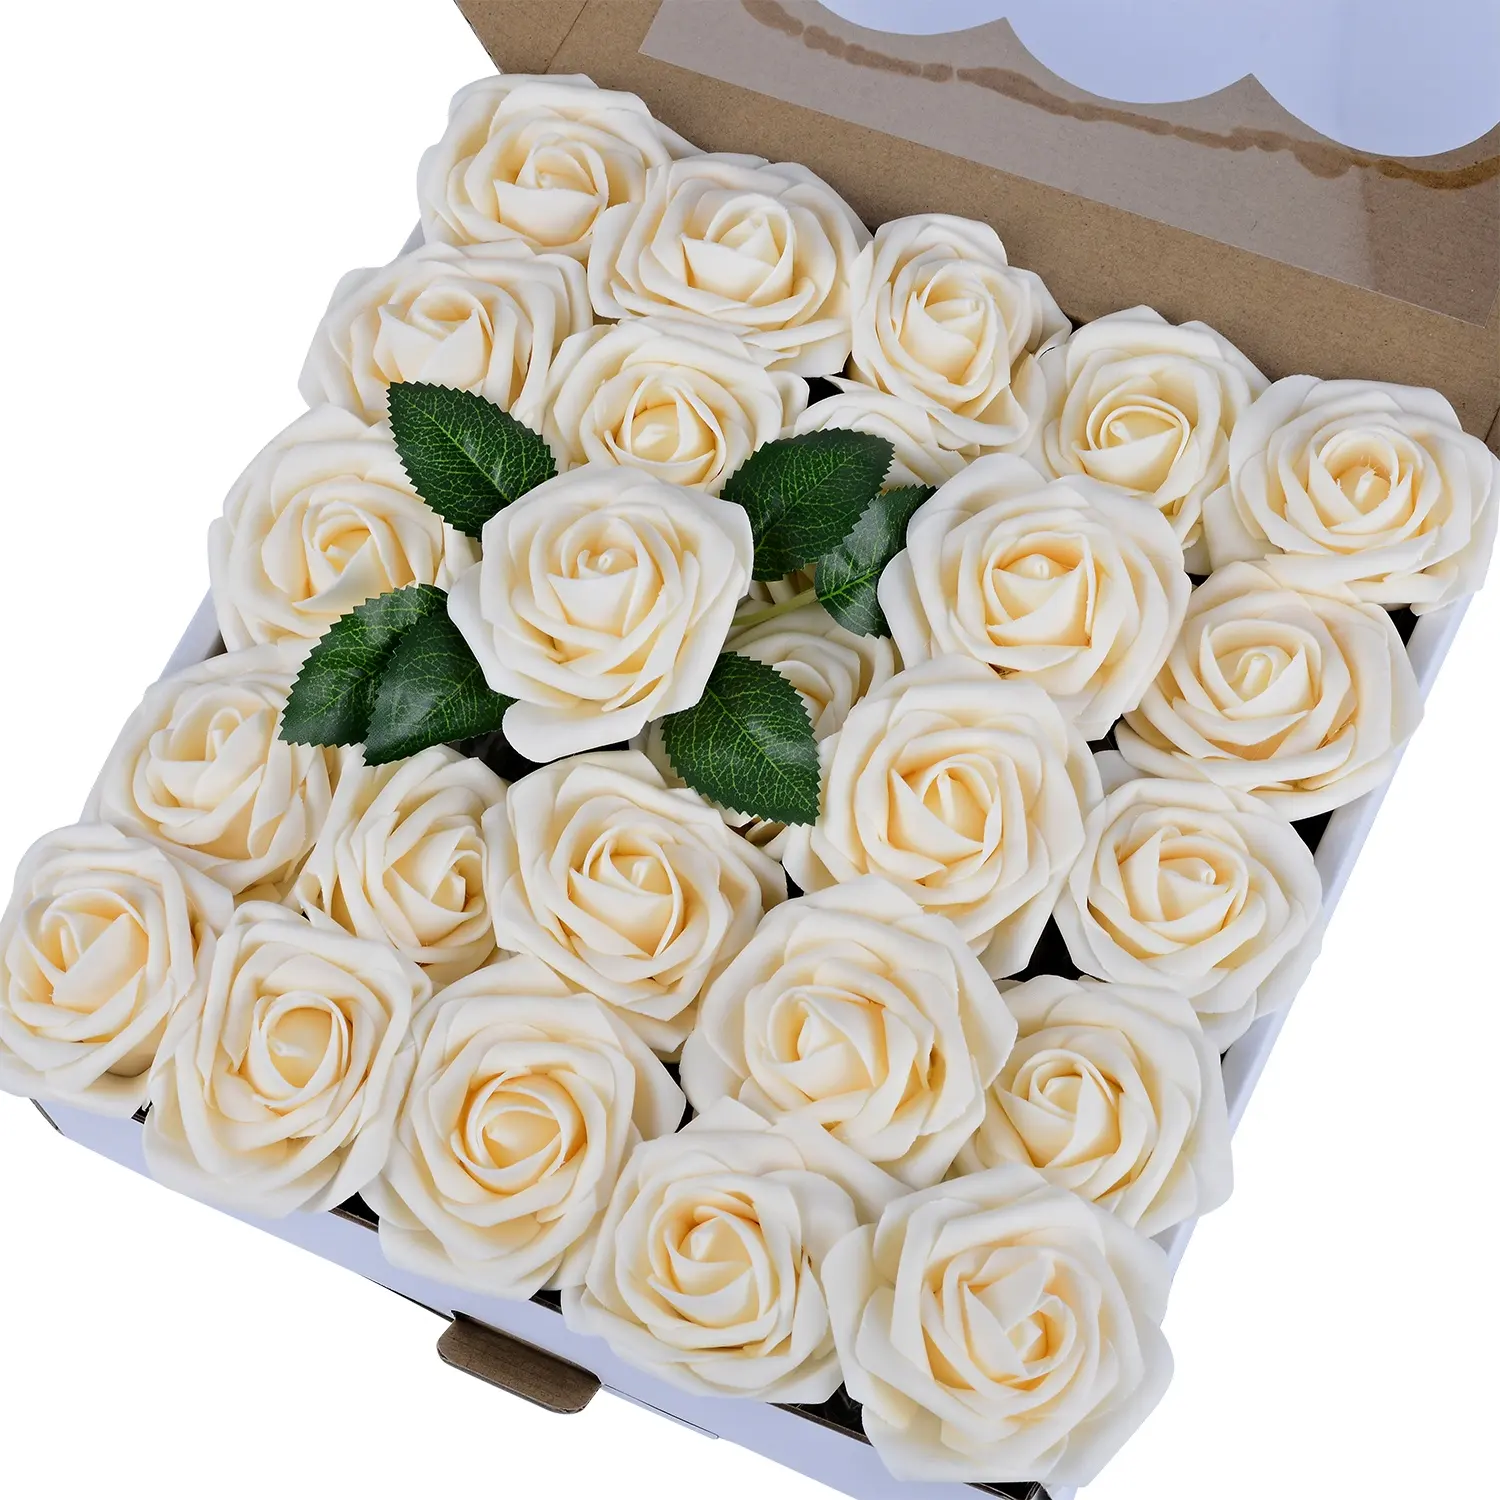 Rosas artificiales decorativas, rosas artificiales de espuma multicolor para centros de mesa de boda, venta al por mayor